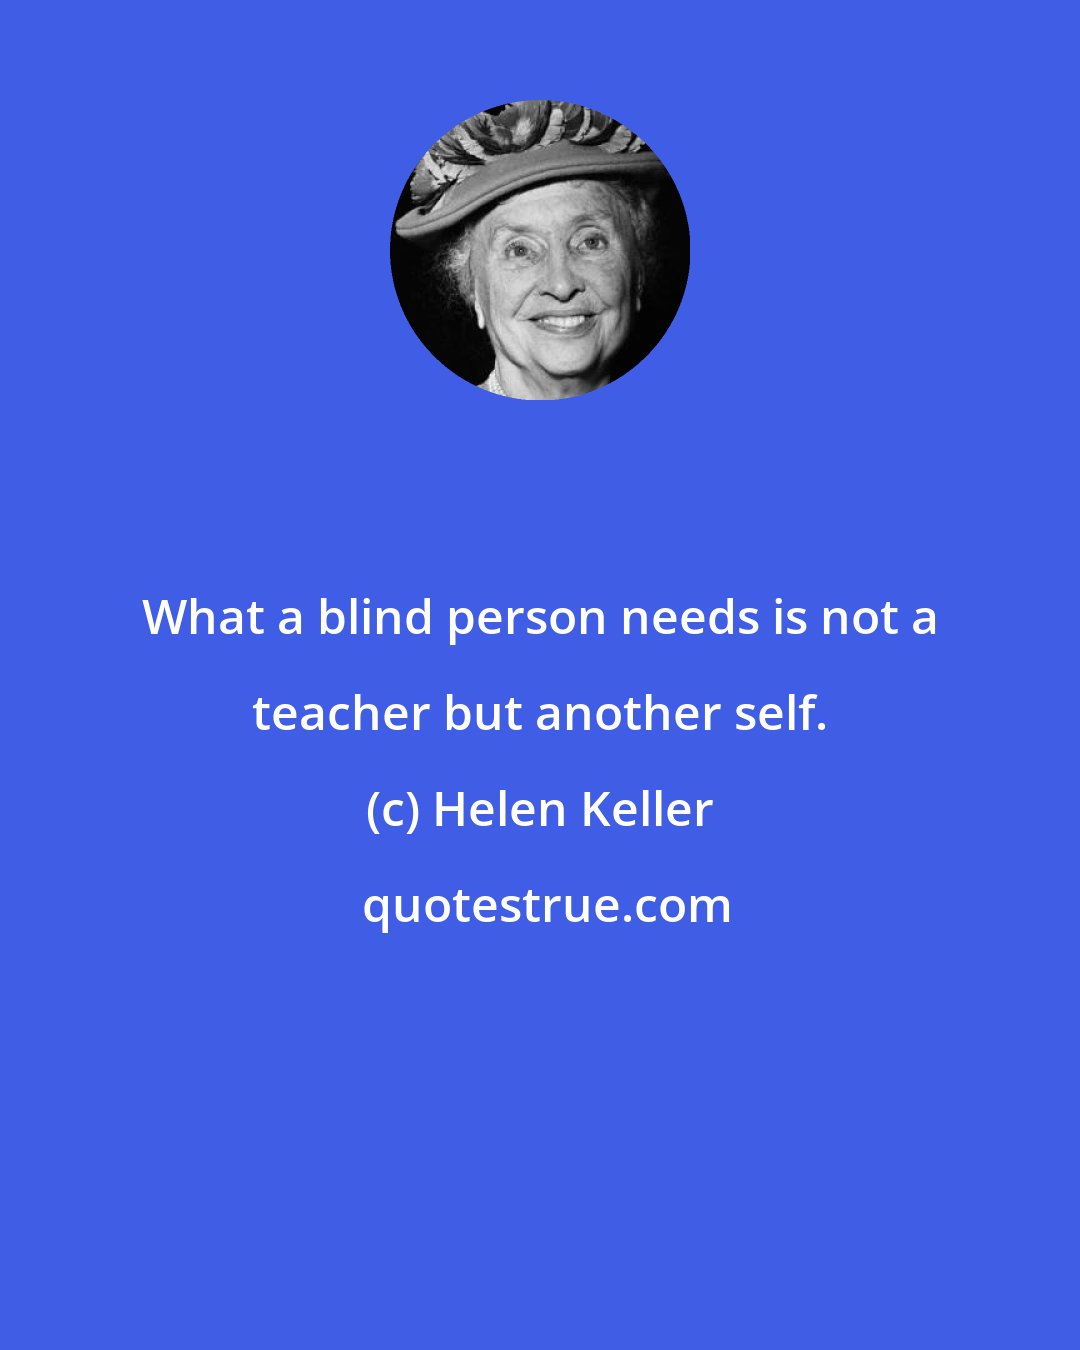 Helen Keller: What a blind person needs is not a teacher but another self.